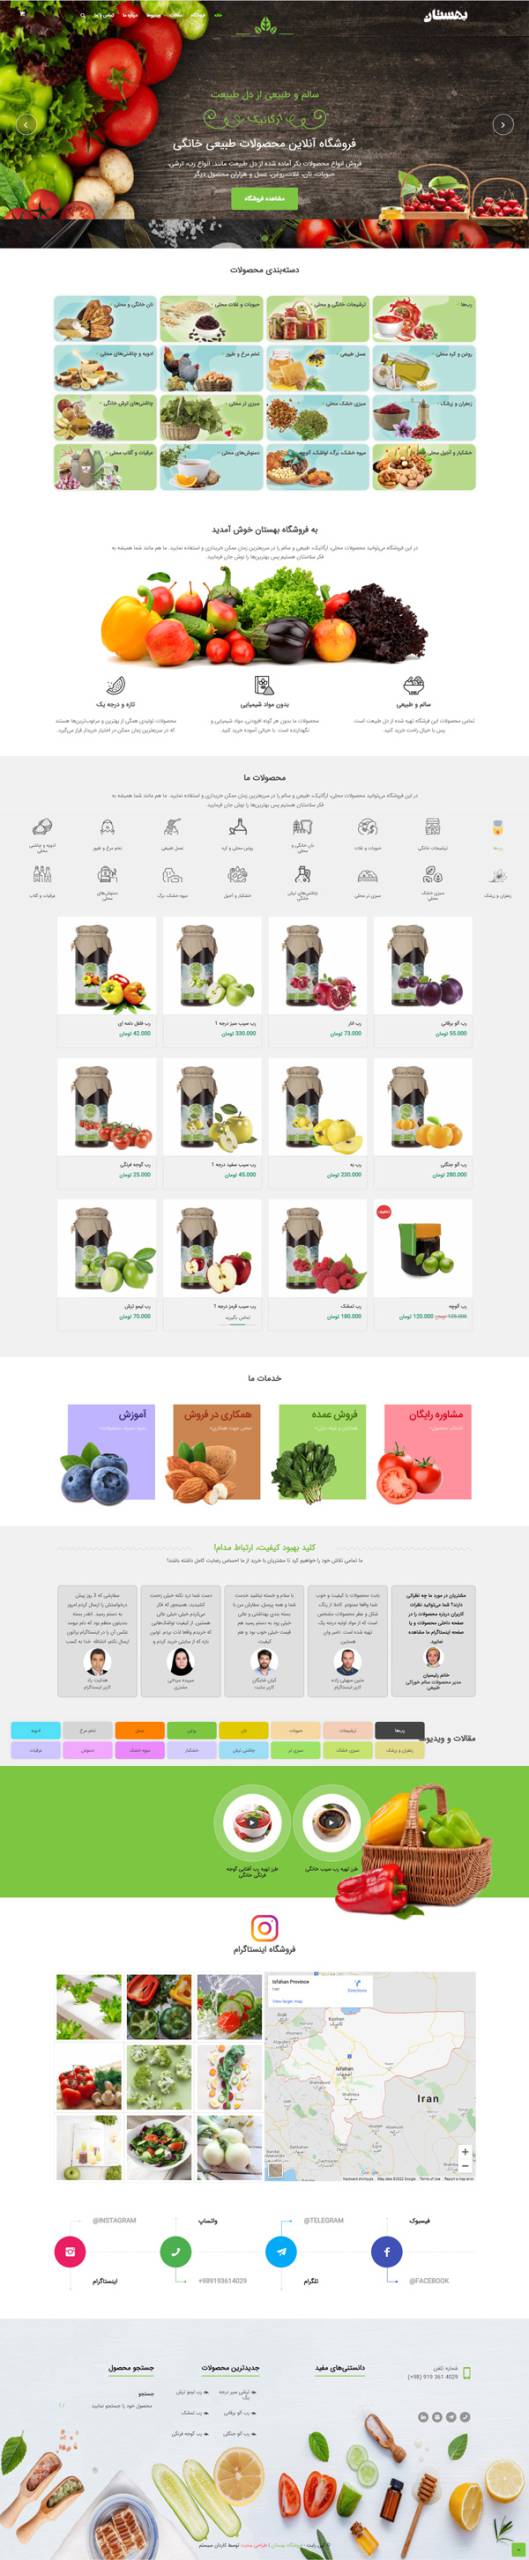 طراحی سایت بهستان | فروشگاه محصولات طبیعی خانگی